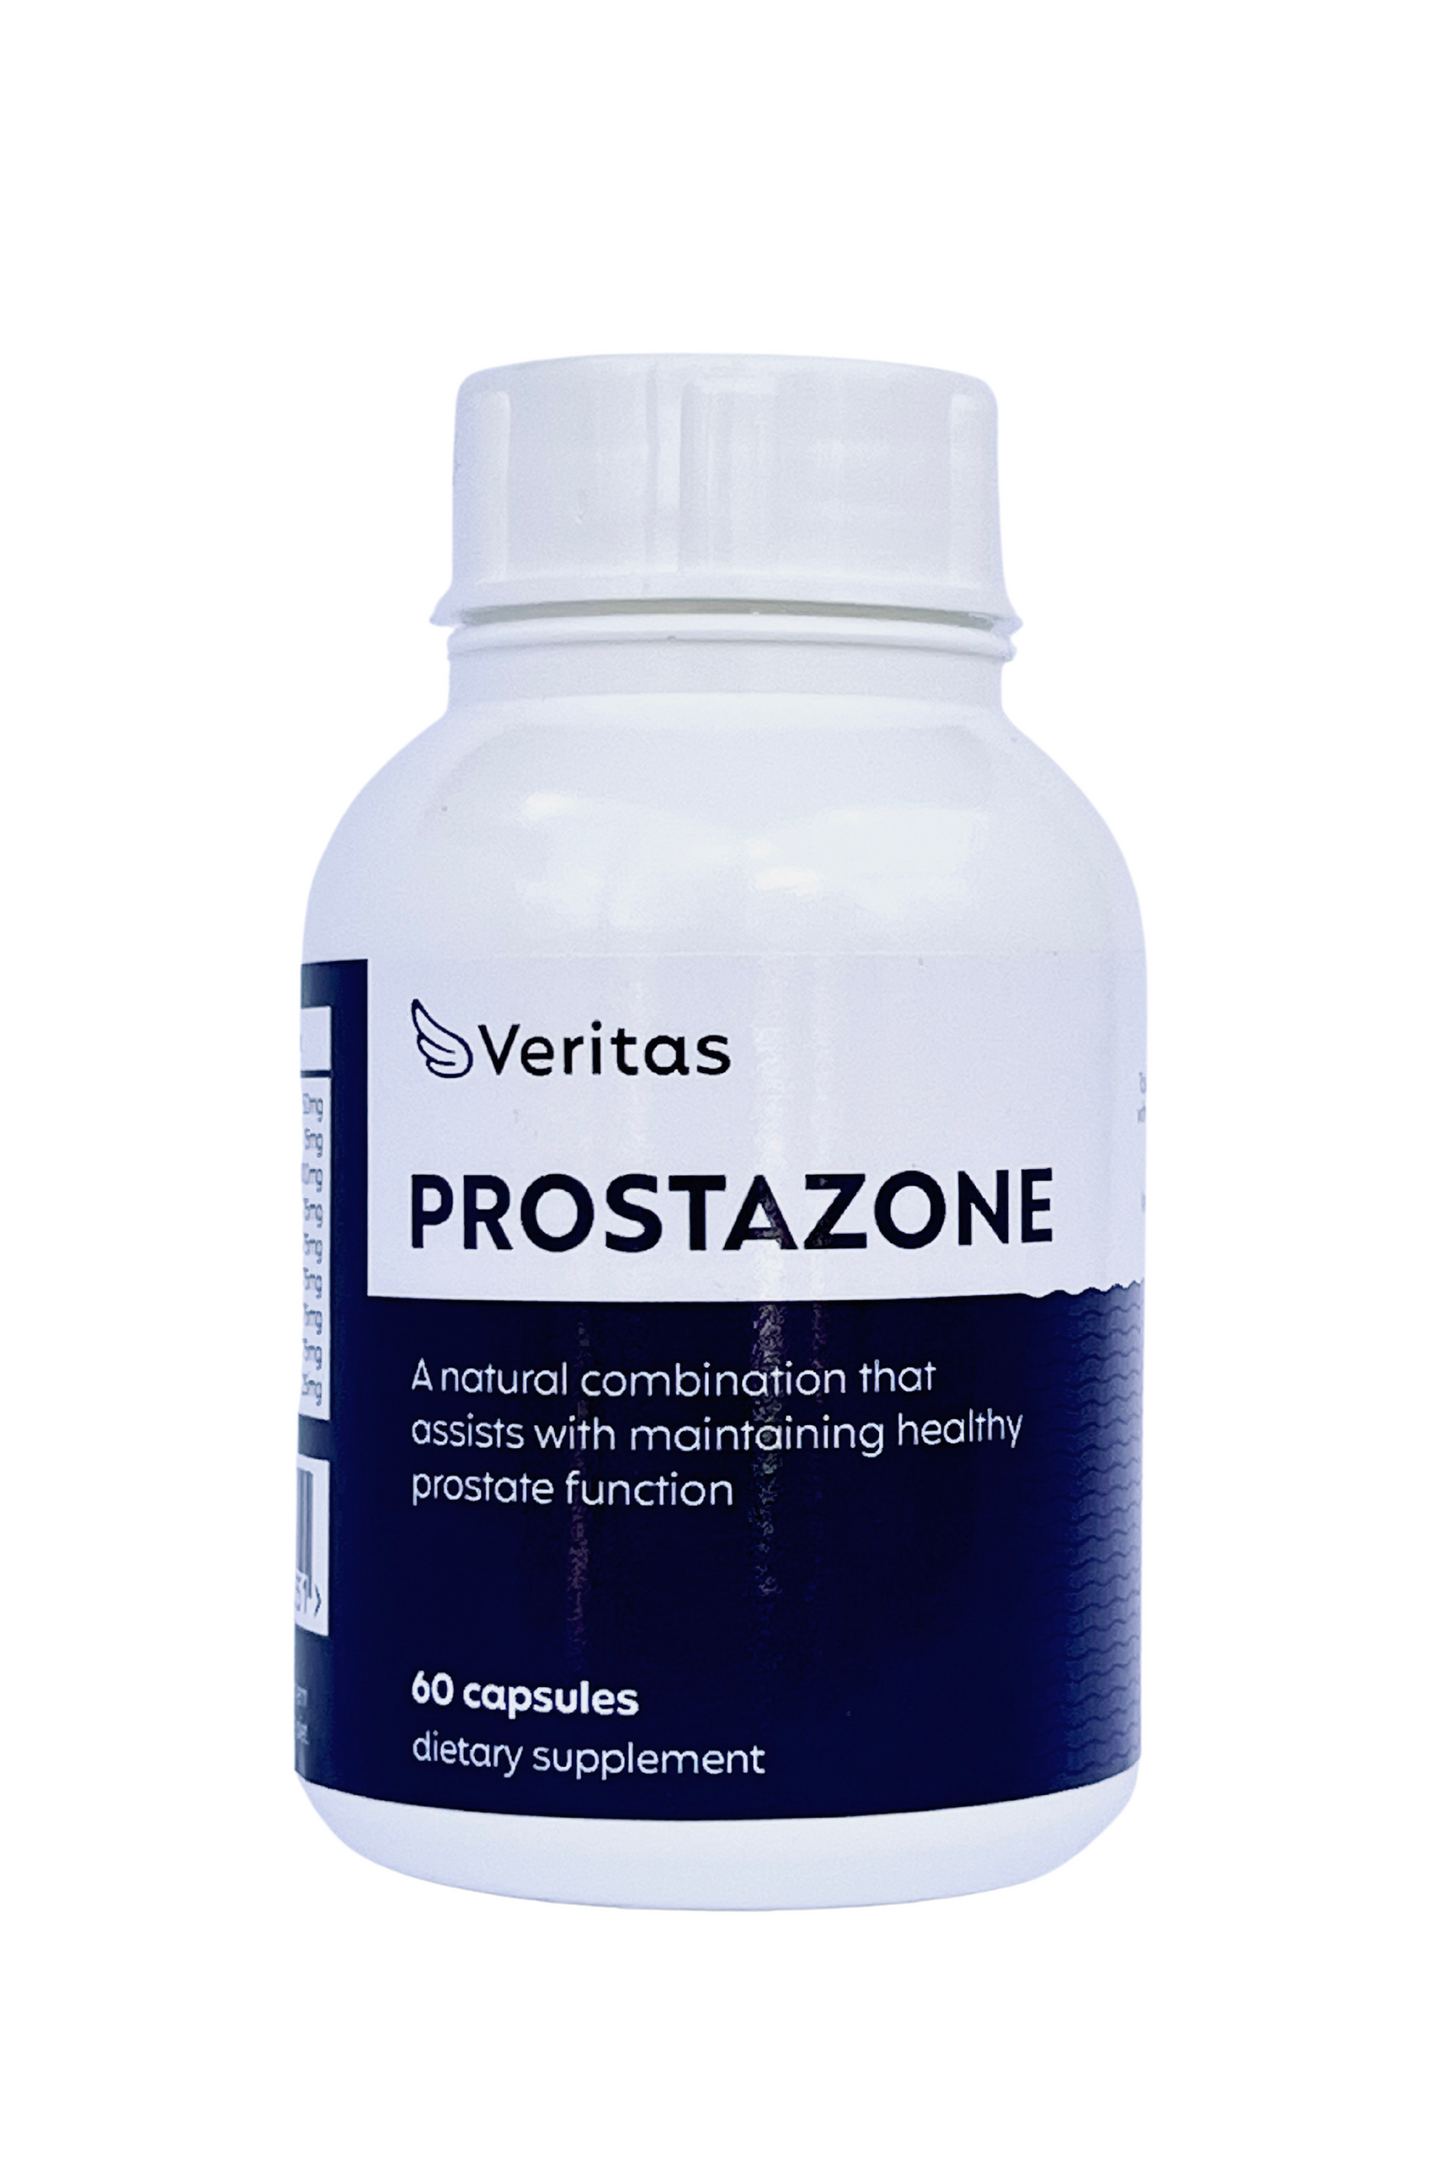 Prostazone